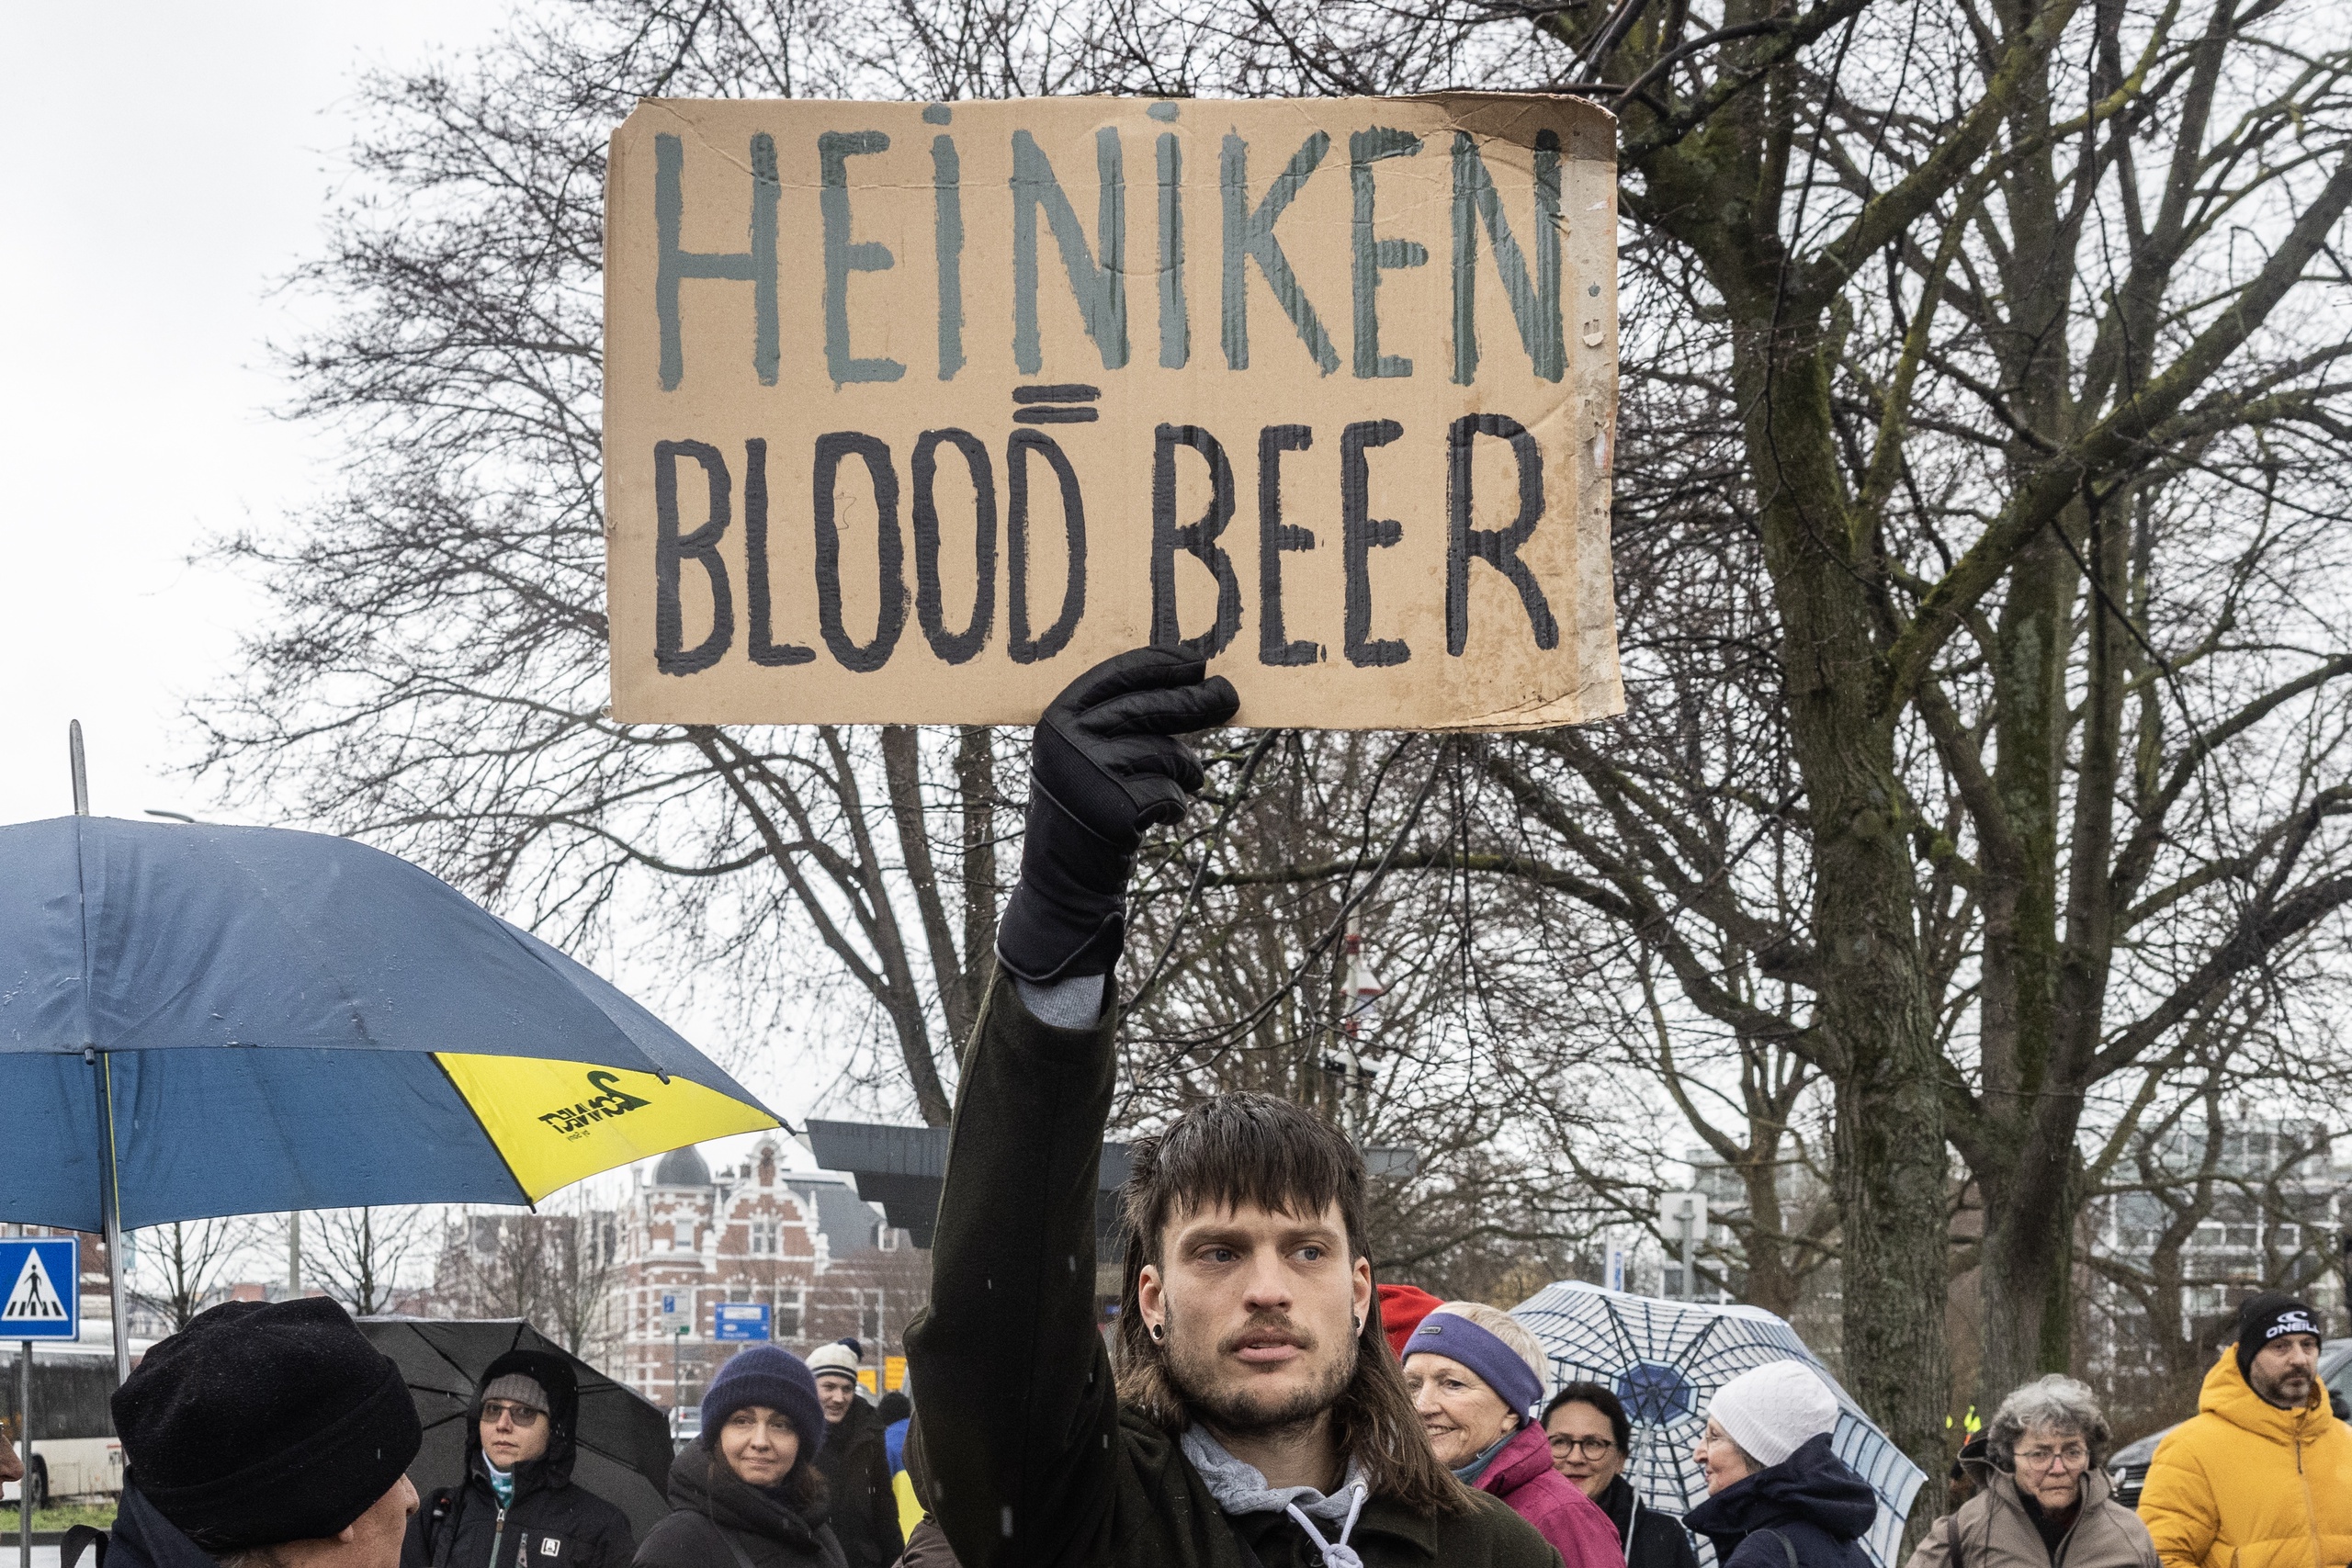 Protestbord tegen bierbrouwer Heiniken. Heineken investeert nog steeds in Rusland. Herdenkings- en solidariteitstocht voor Oekraïne in Den Haag. Het is precies een jaar geleden dat Rusland het buurland Oekraïne binnenviel. 